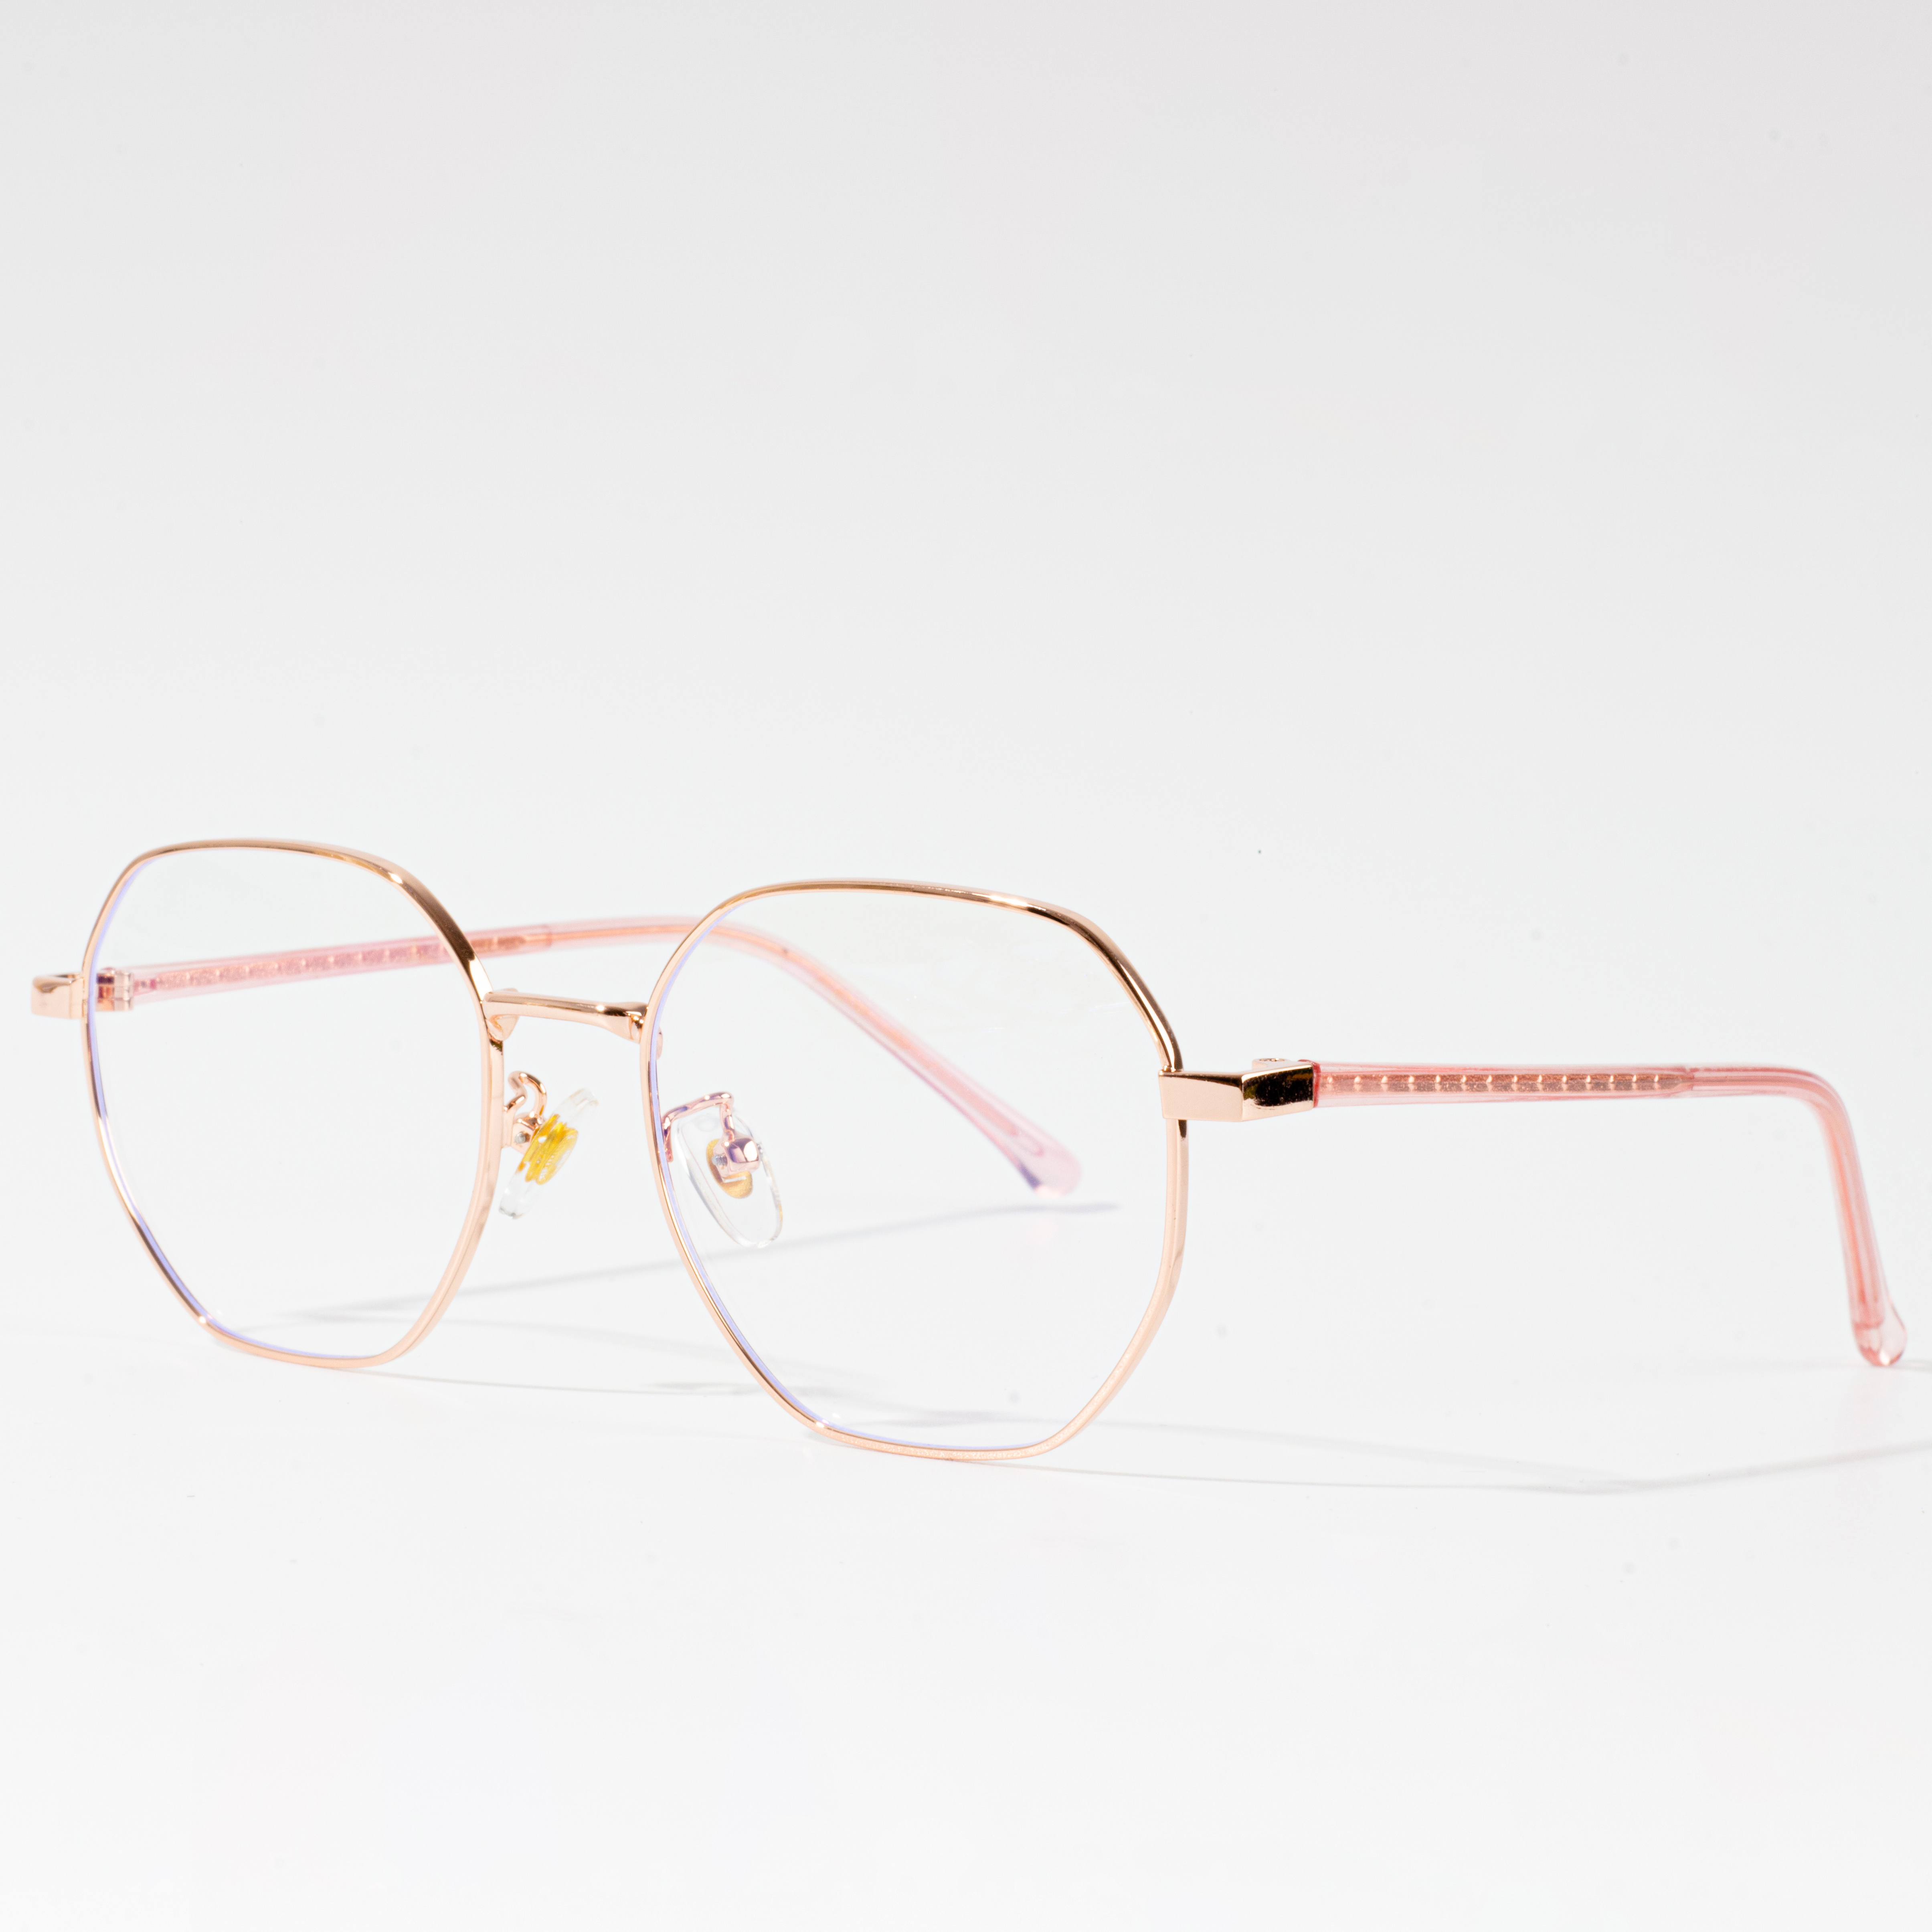 frame kacamata larang